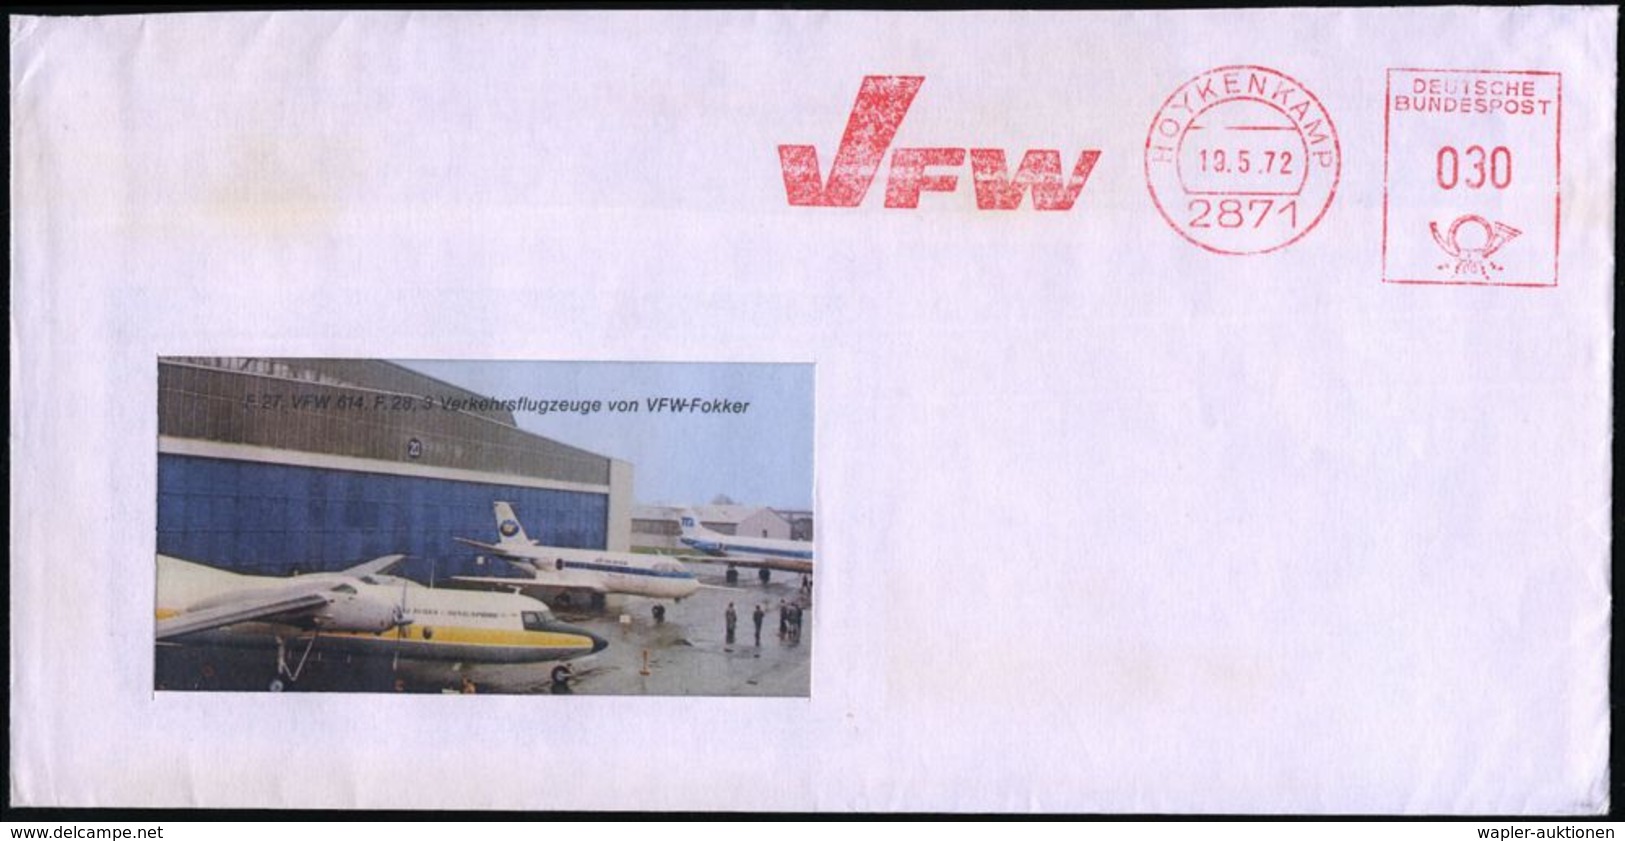 FLUGZEUGINDUSTRIE & -TYPEN : 2871 HOYKENKAMP/ VFW 1972 (19.5.) AFS = V Ereinigte Flugzeug-Werke Fokker GmbH A. Reklame-B - Airplanes